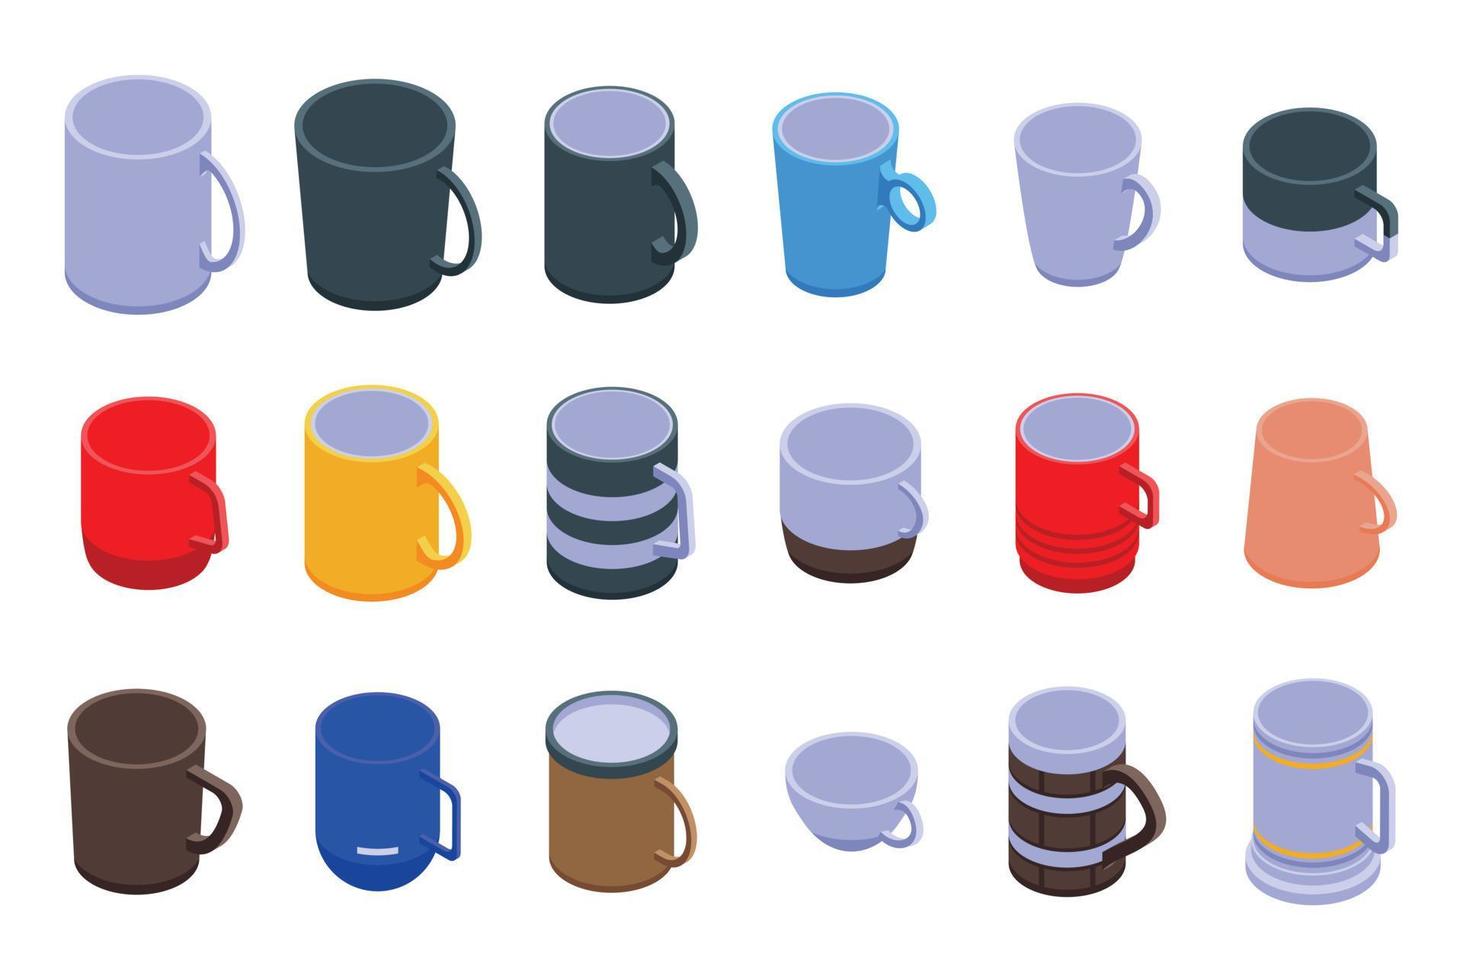 Mug icons set, isometric style vector